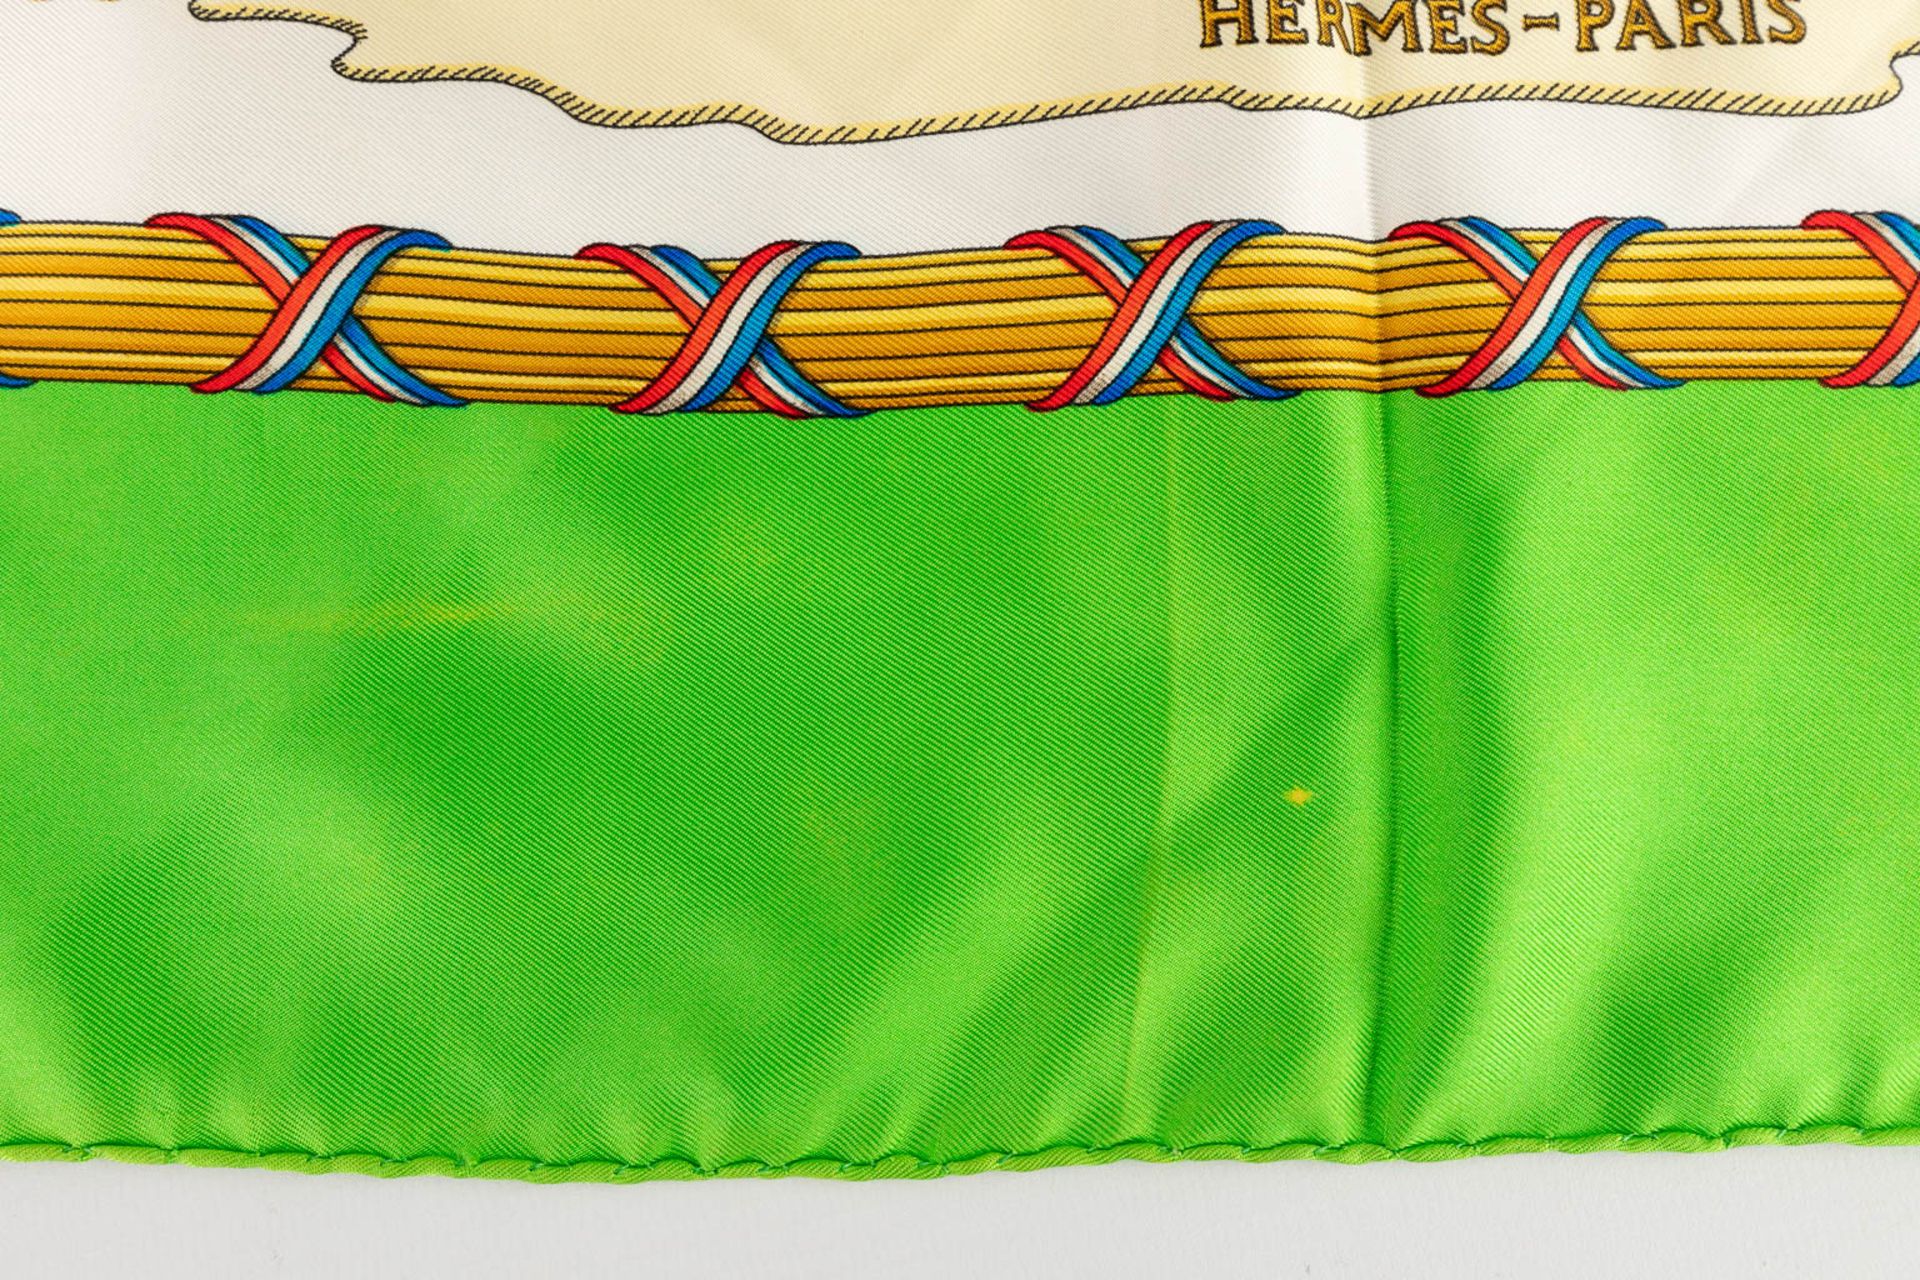 Hermès Paris, a silk scarf: 'Liberté Egalité Fraternité' (W:90 x H:90 cm) - Image 11 of 12